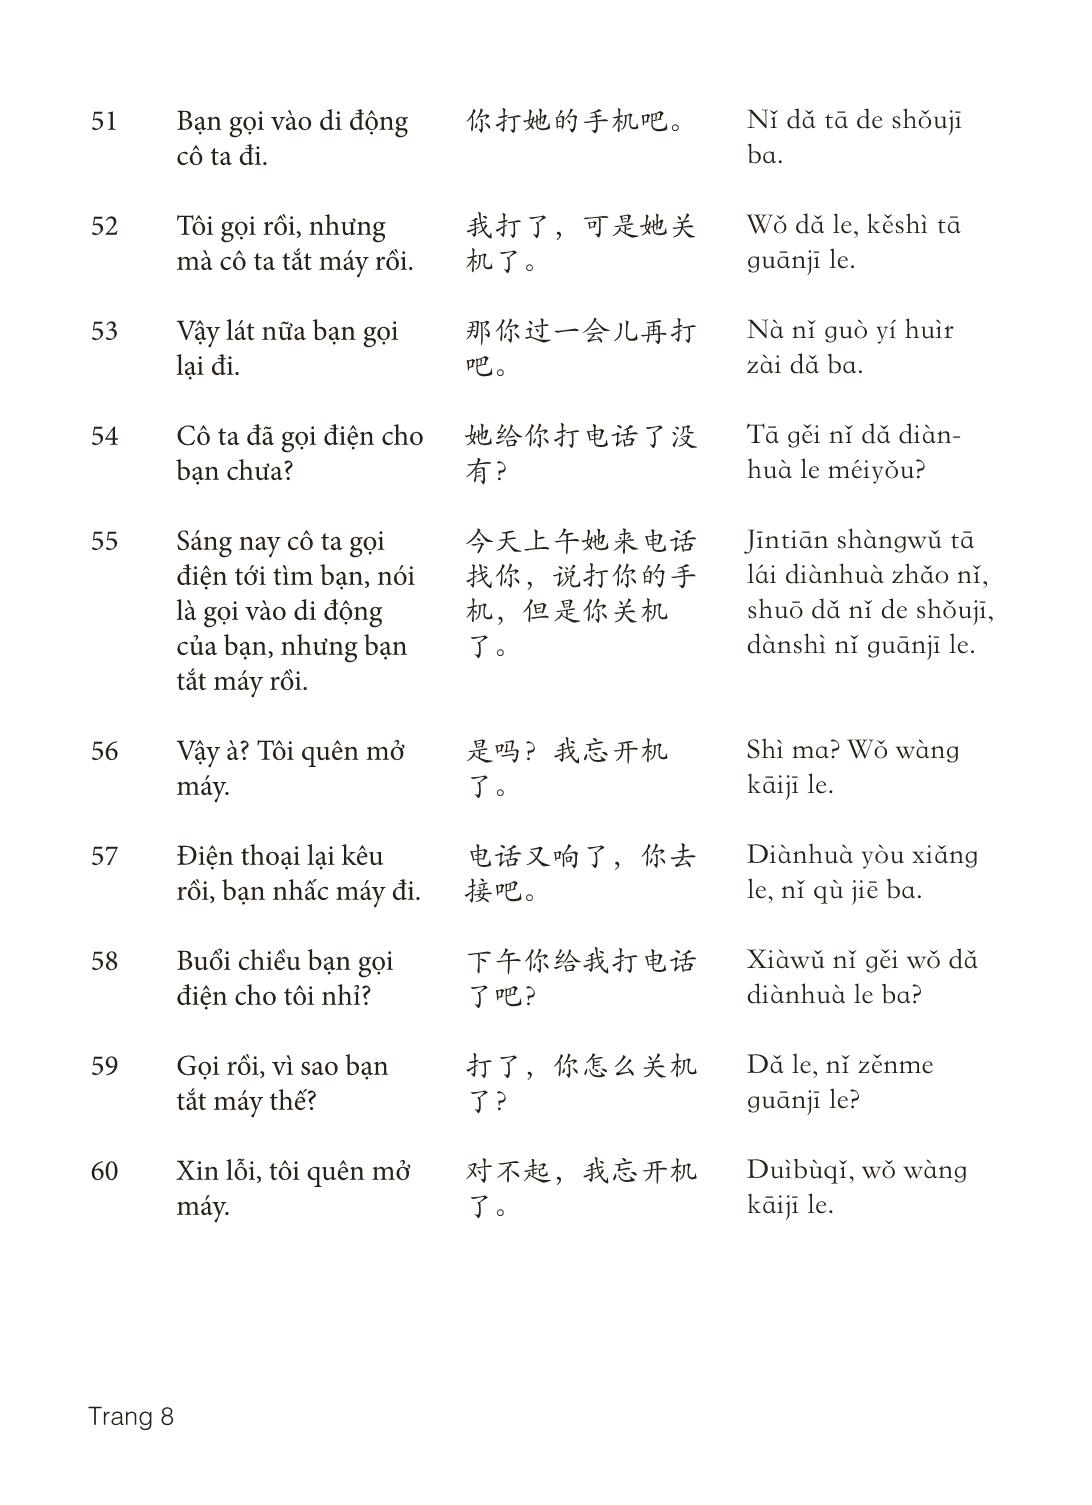 3000 Câu đàm thoại tiếng Hoa - Phần 9 trang 8